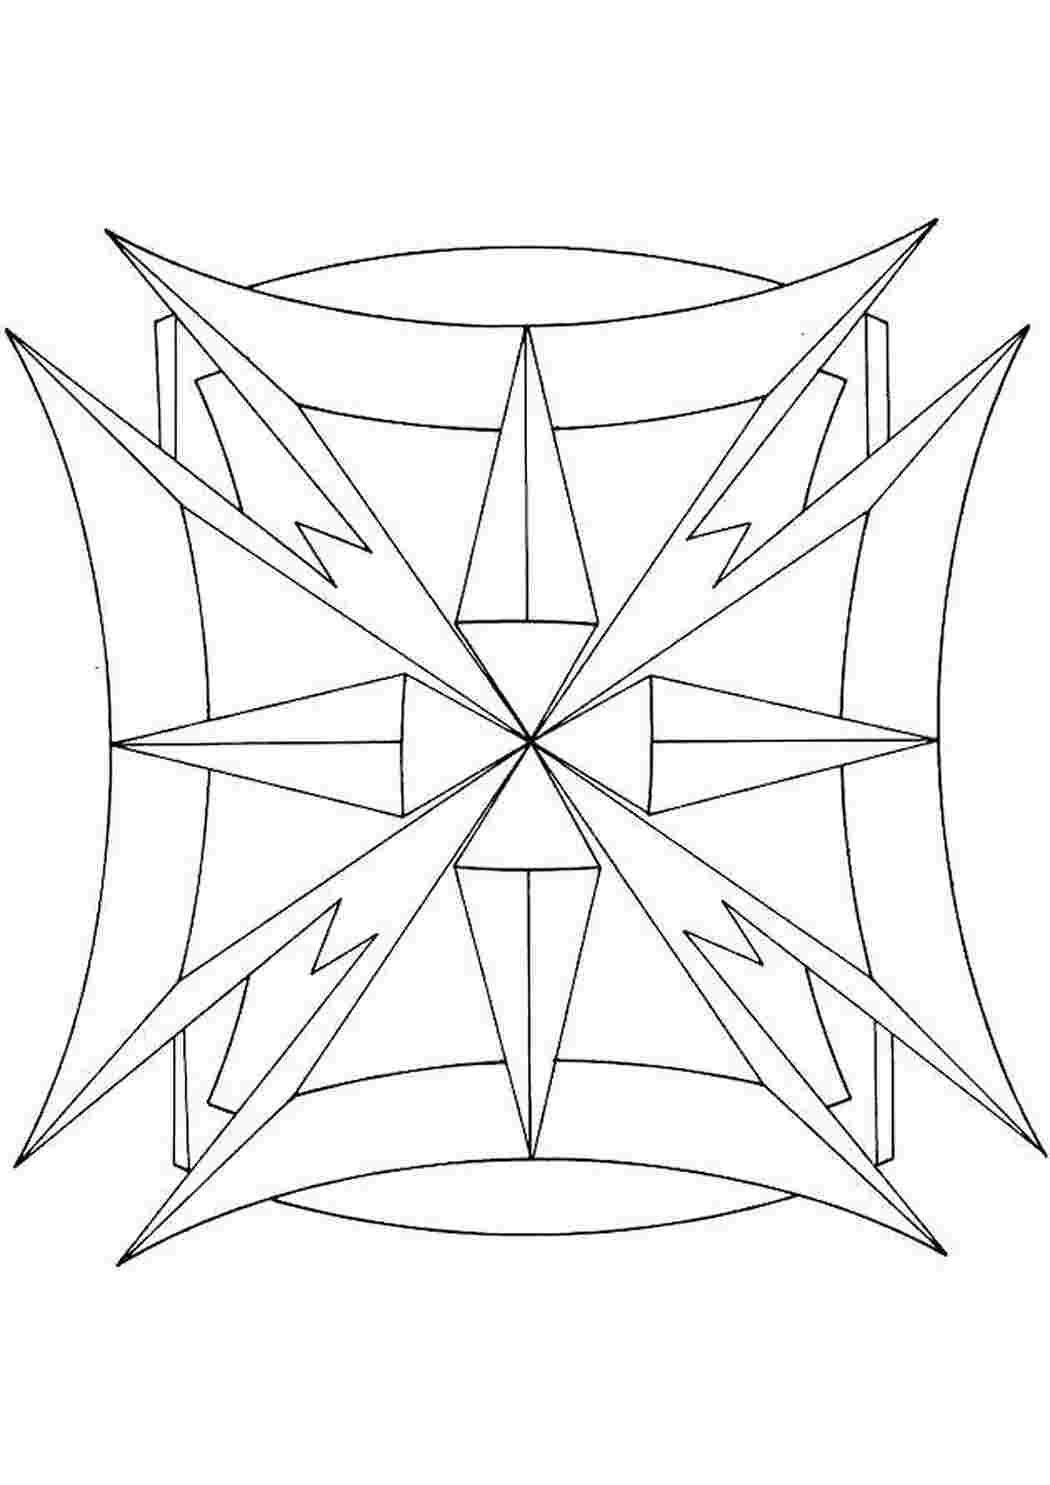 Симметричные узоры из геометрических фигур